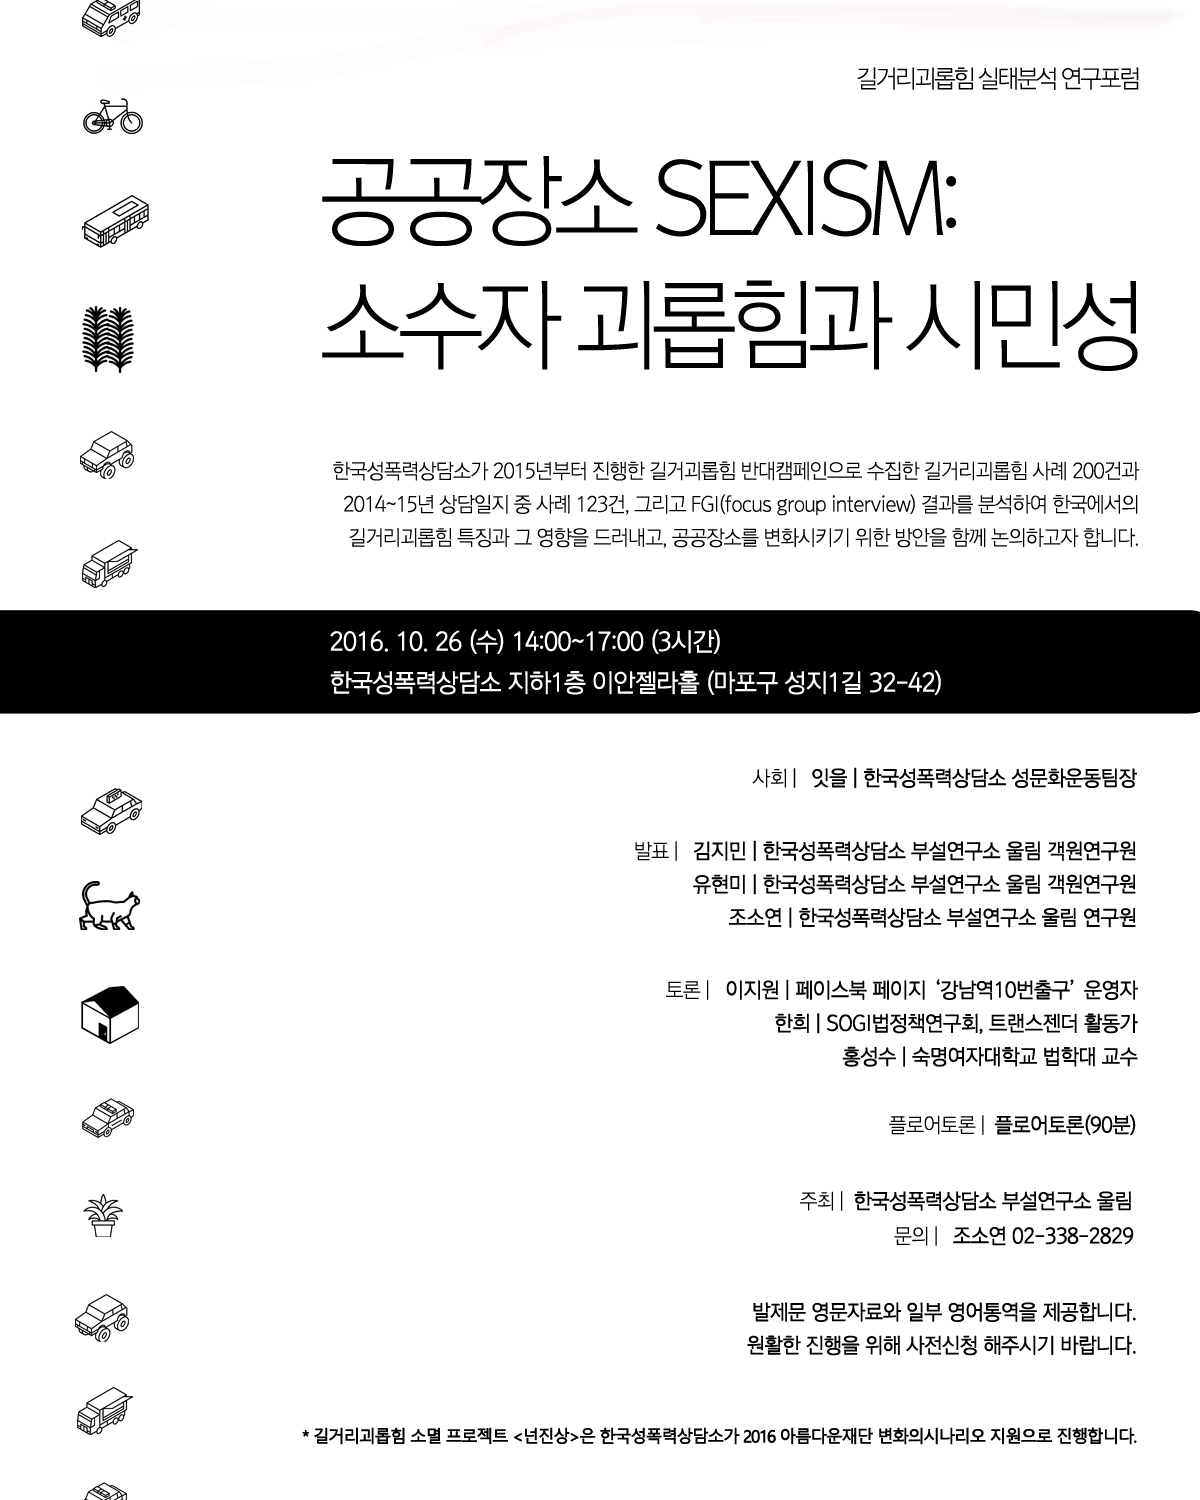 길거리괴롭힘 실태분석 연구포럼 공공장소 SEXISM: 소수자 괴롭힘과 시민성